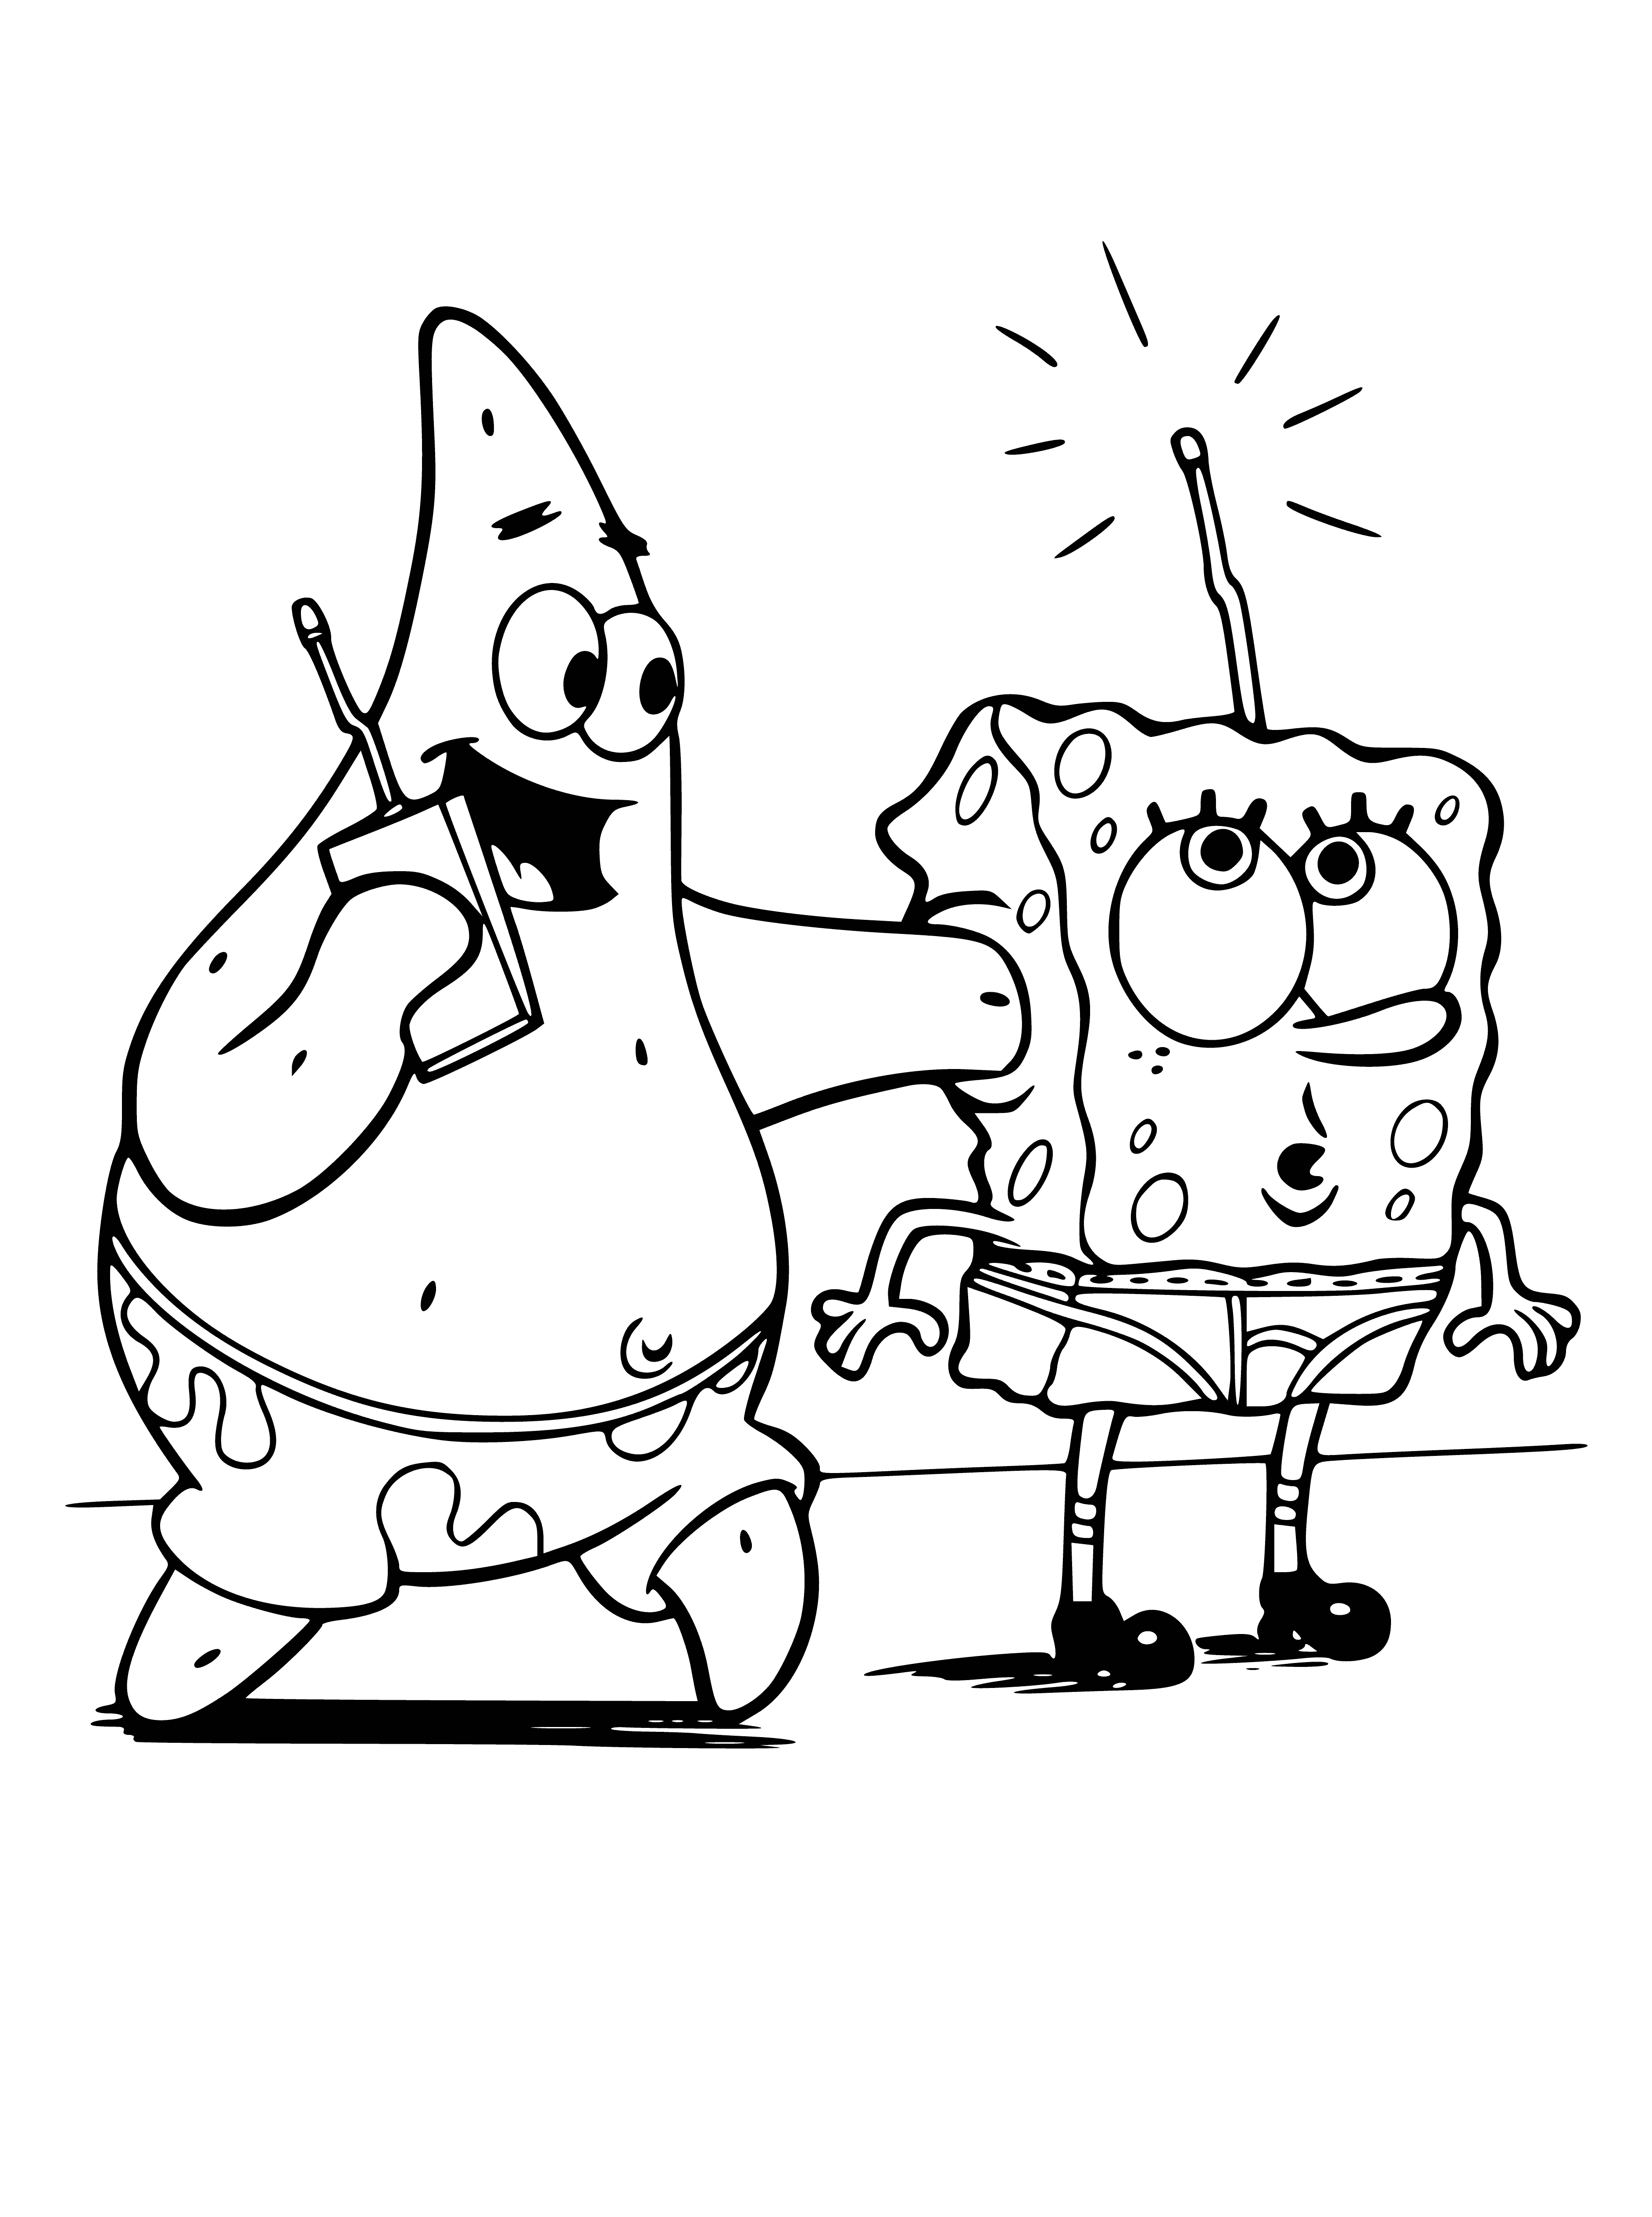 Patrick and Bob coloring page